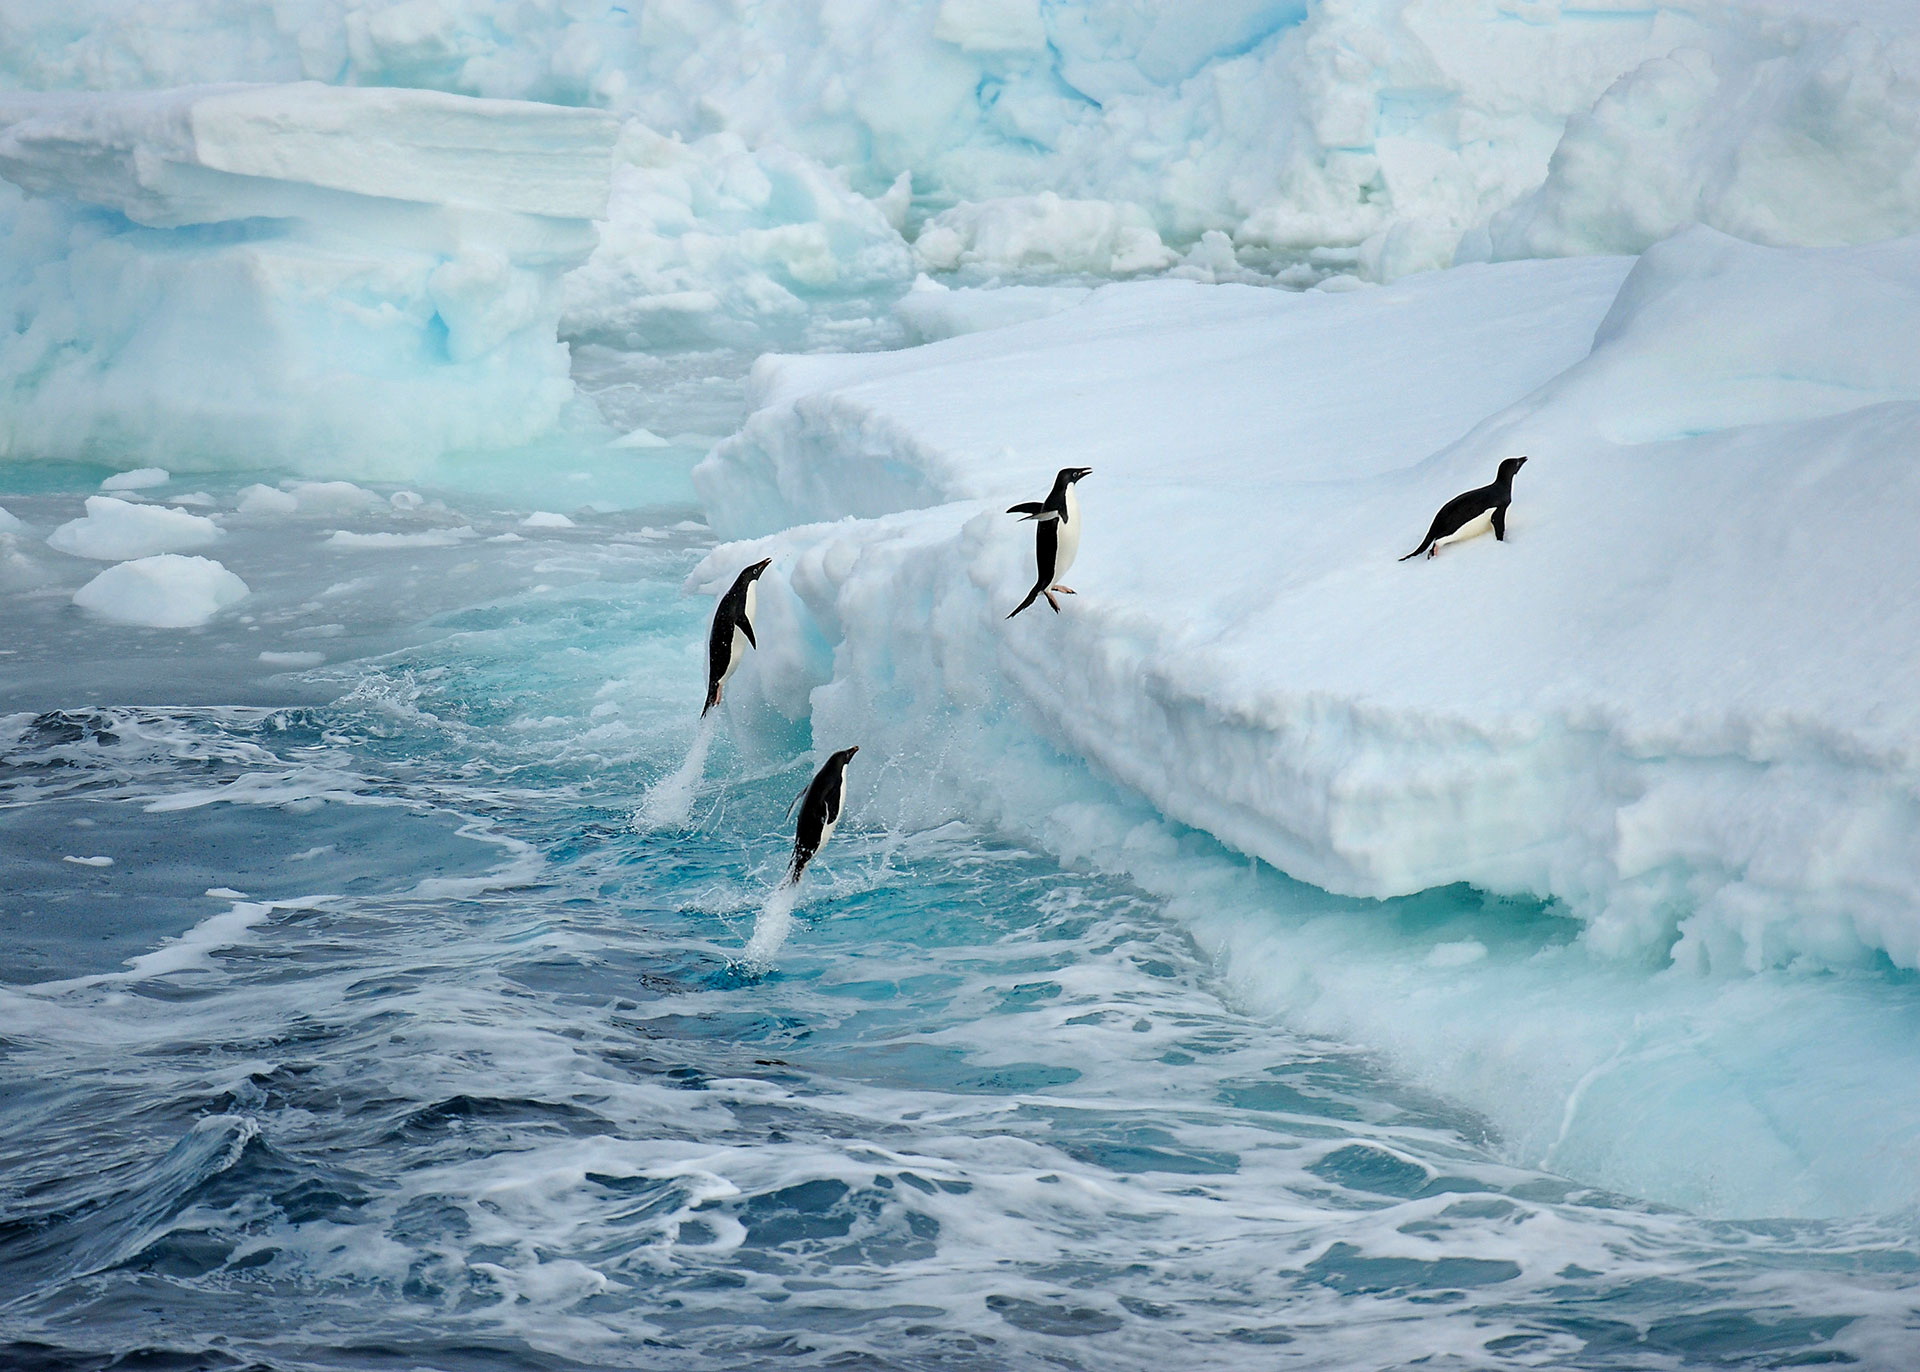 Pingüinos de Adelia, habitantes del continente antártico